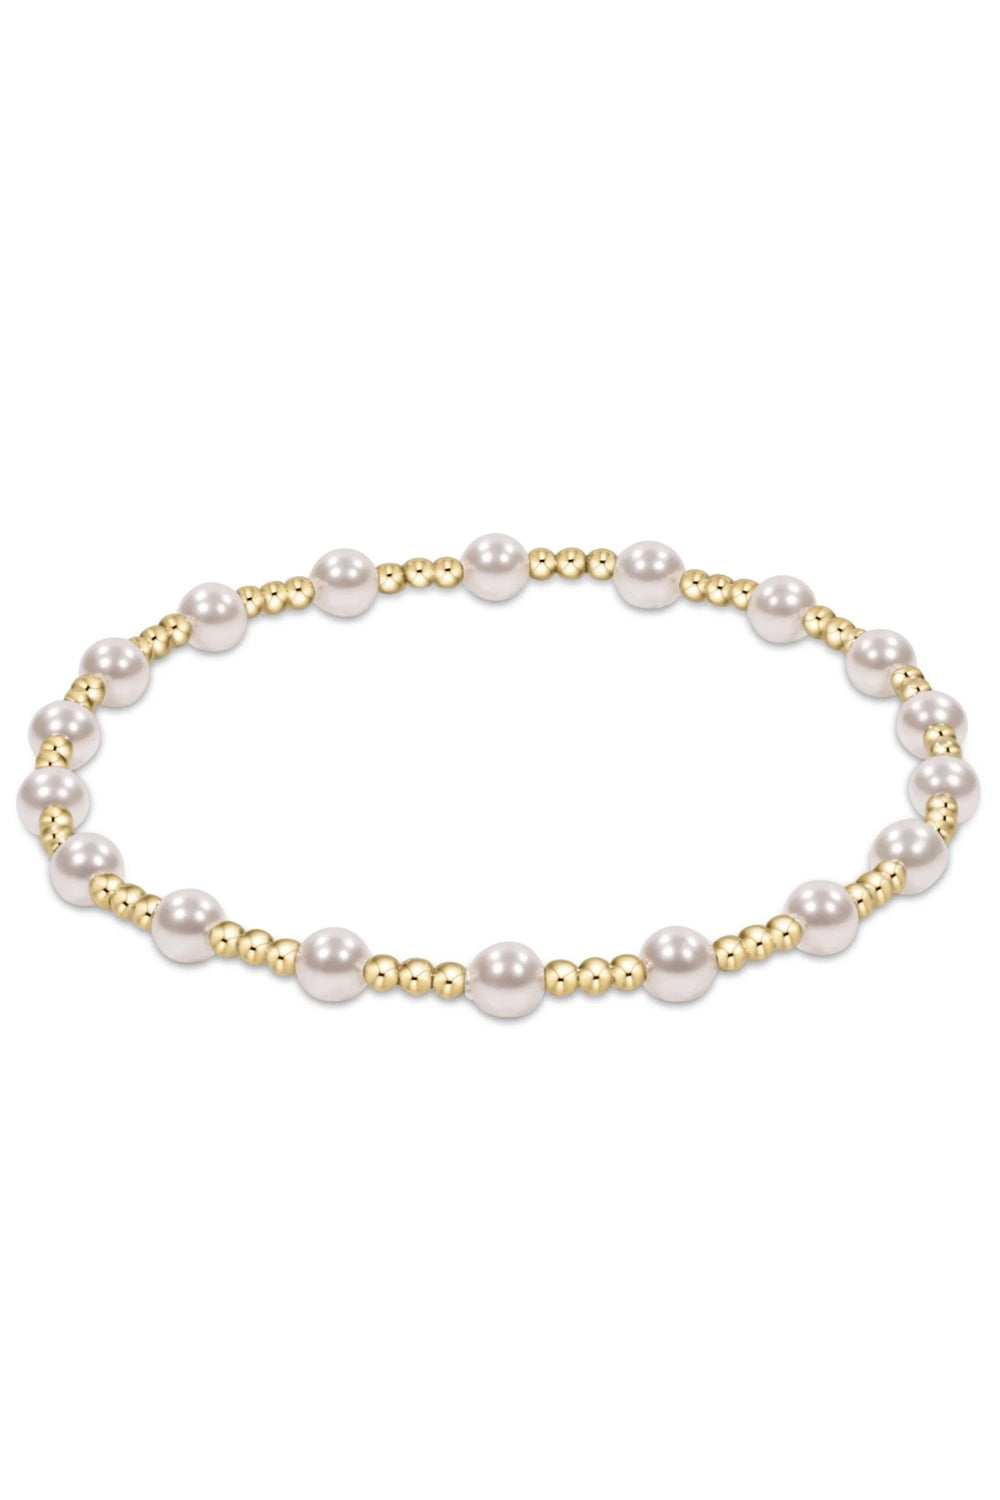 enewton: Classic Sincerity Pattern 4mm Bead Bracelet - Pearl | Makk Fashions